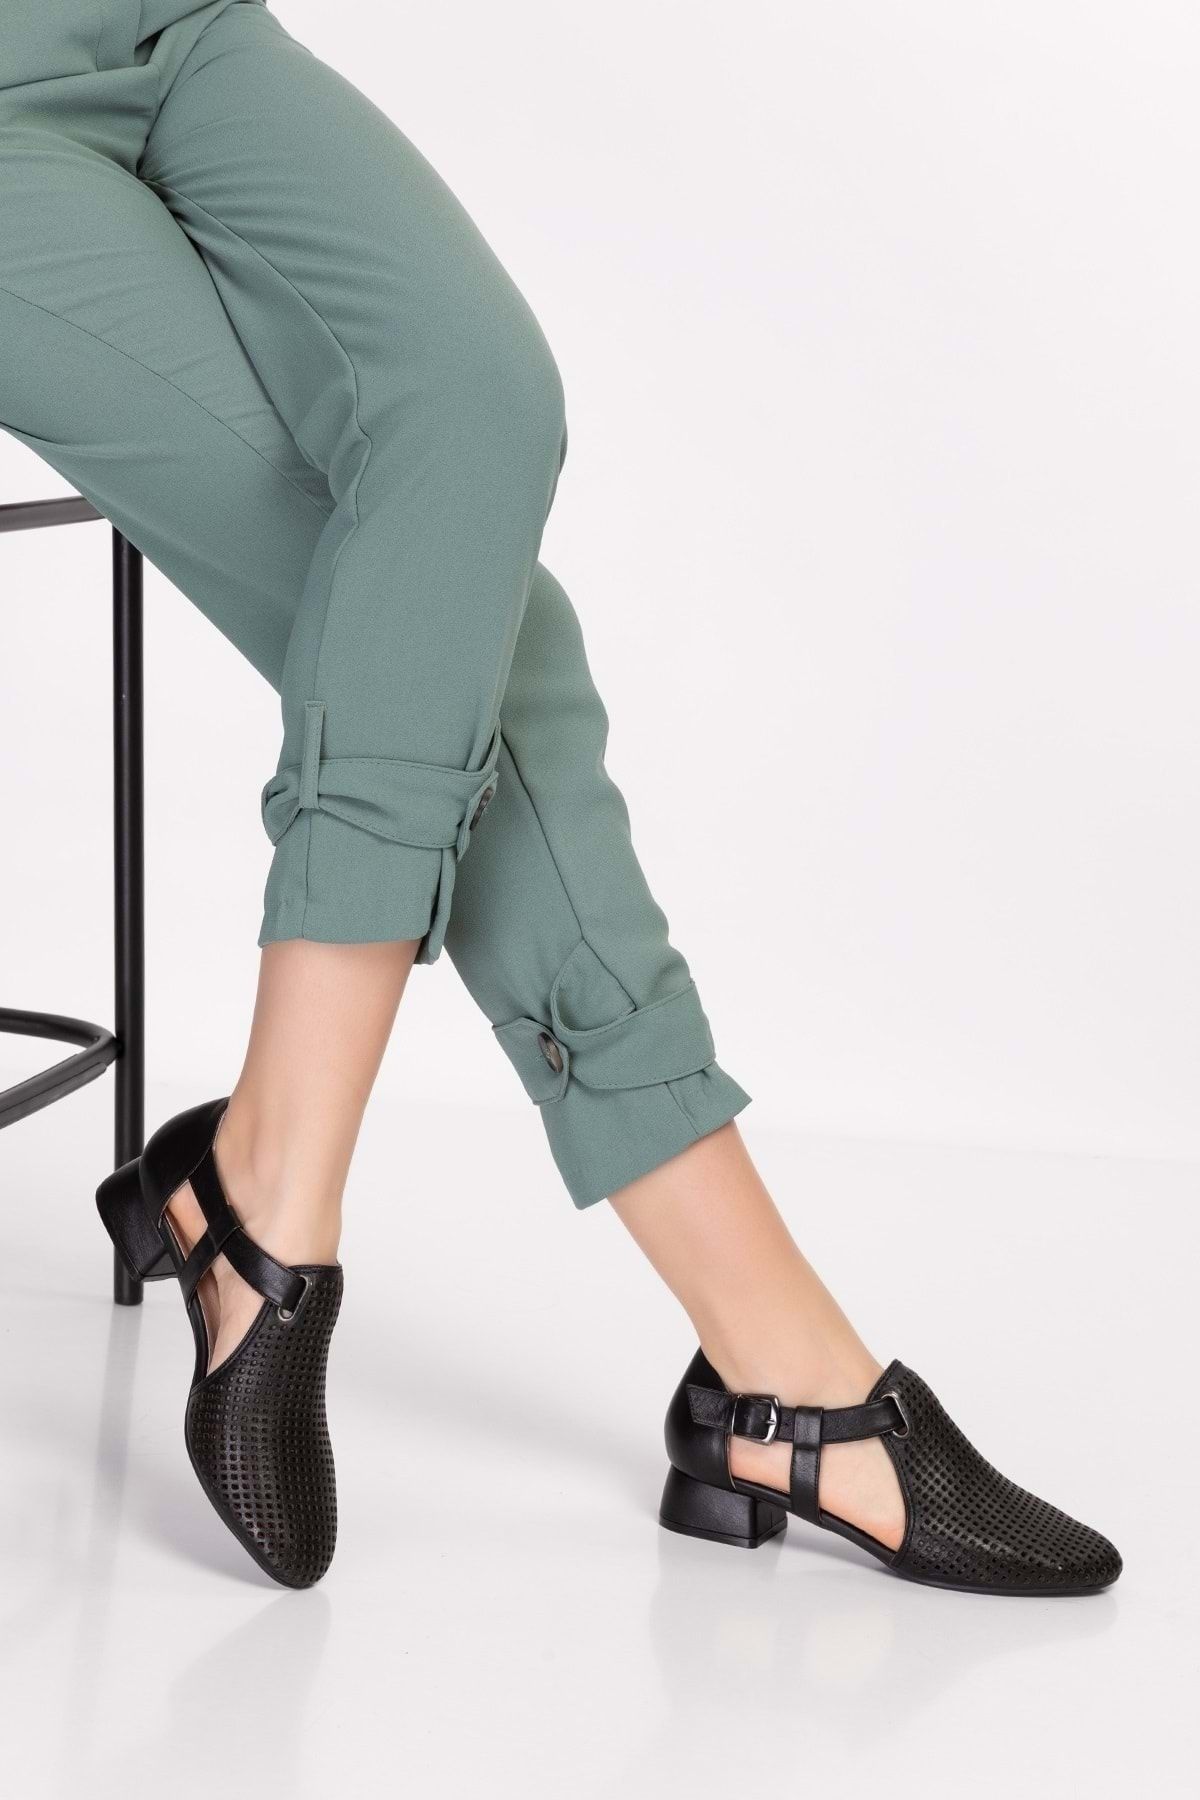 Gondol Kadın Hakiki Deri Lazer Kesim Topuklu Ayakkabı Ast.6400 - Siyah - 36